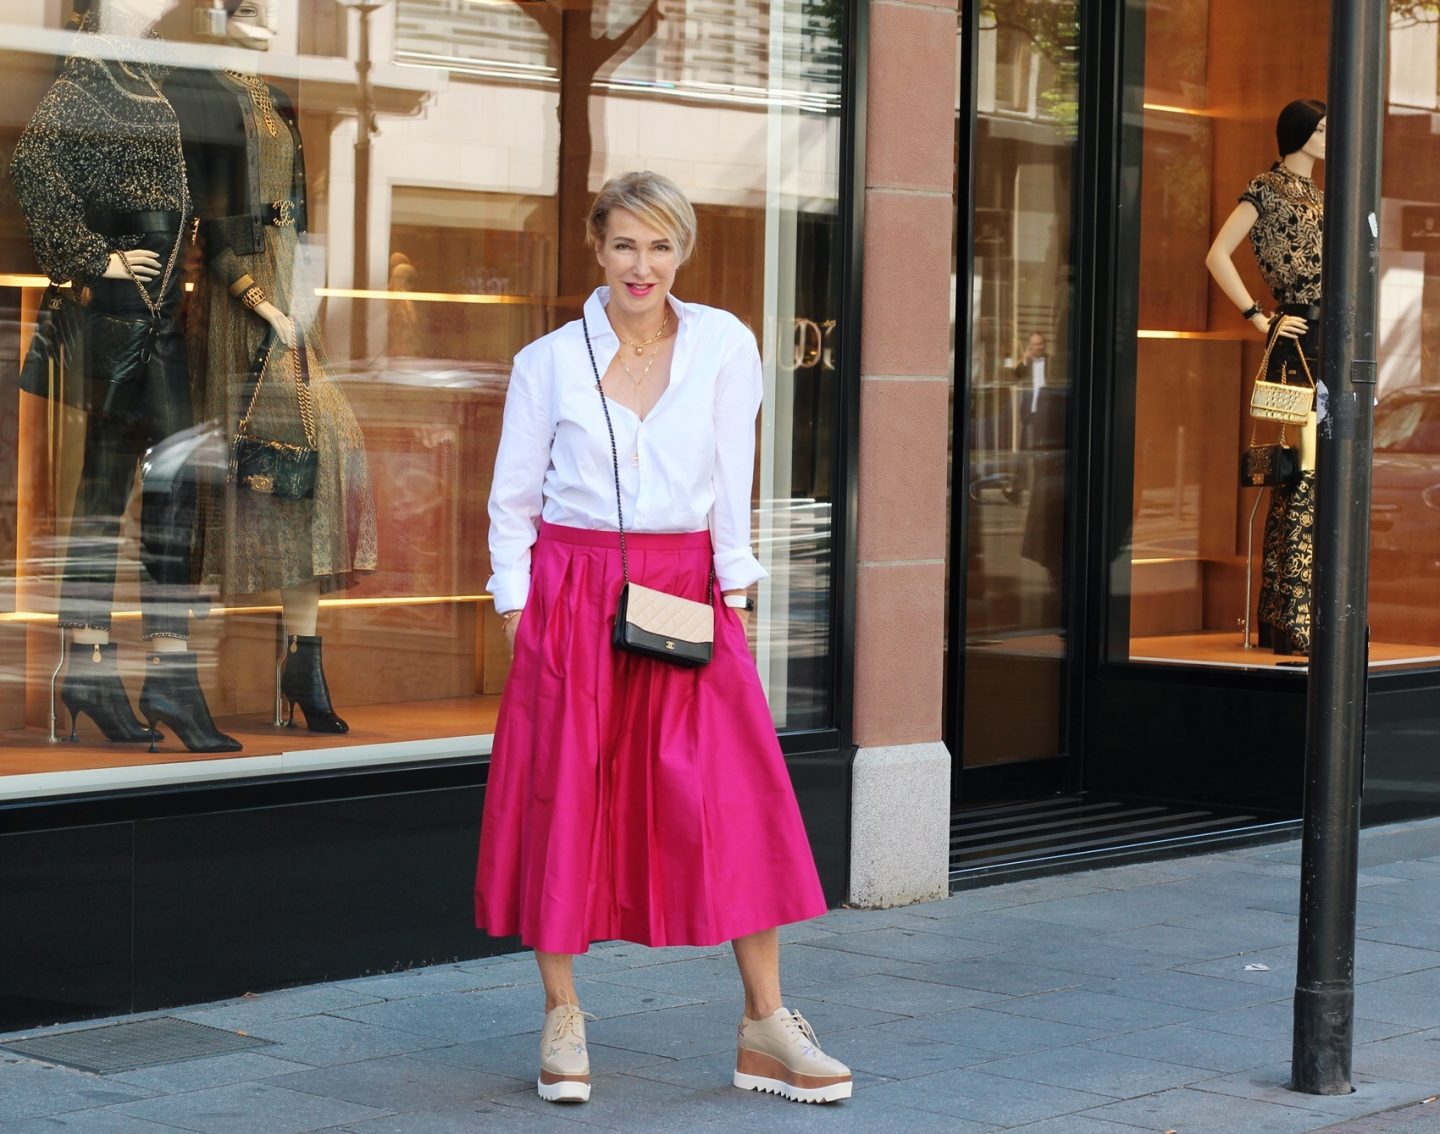 Pinker Sommerrock kombiniert mit weißer Bluse und Plateau Schnürschuhen - Outfitideen für Frauen über 40 über 50 - Modeblog